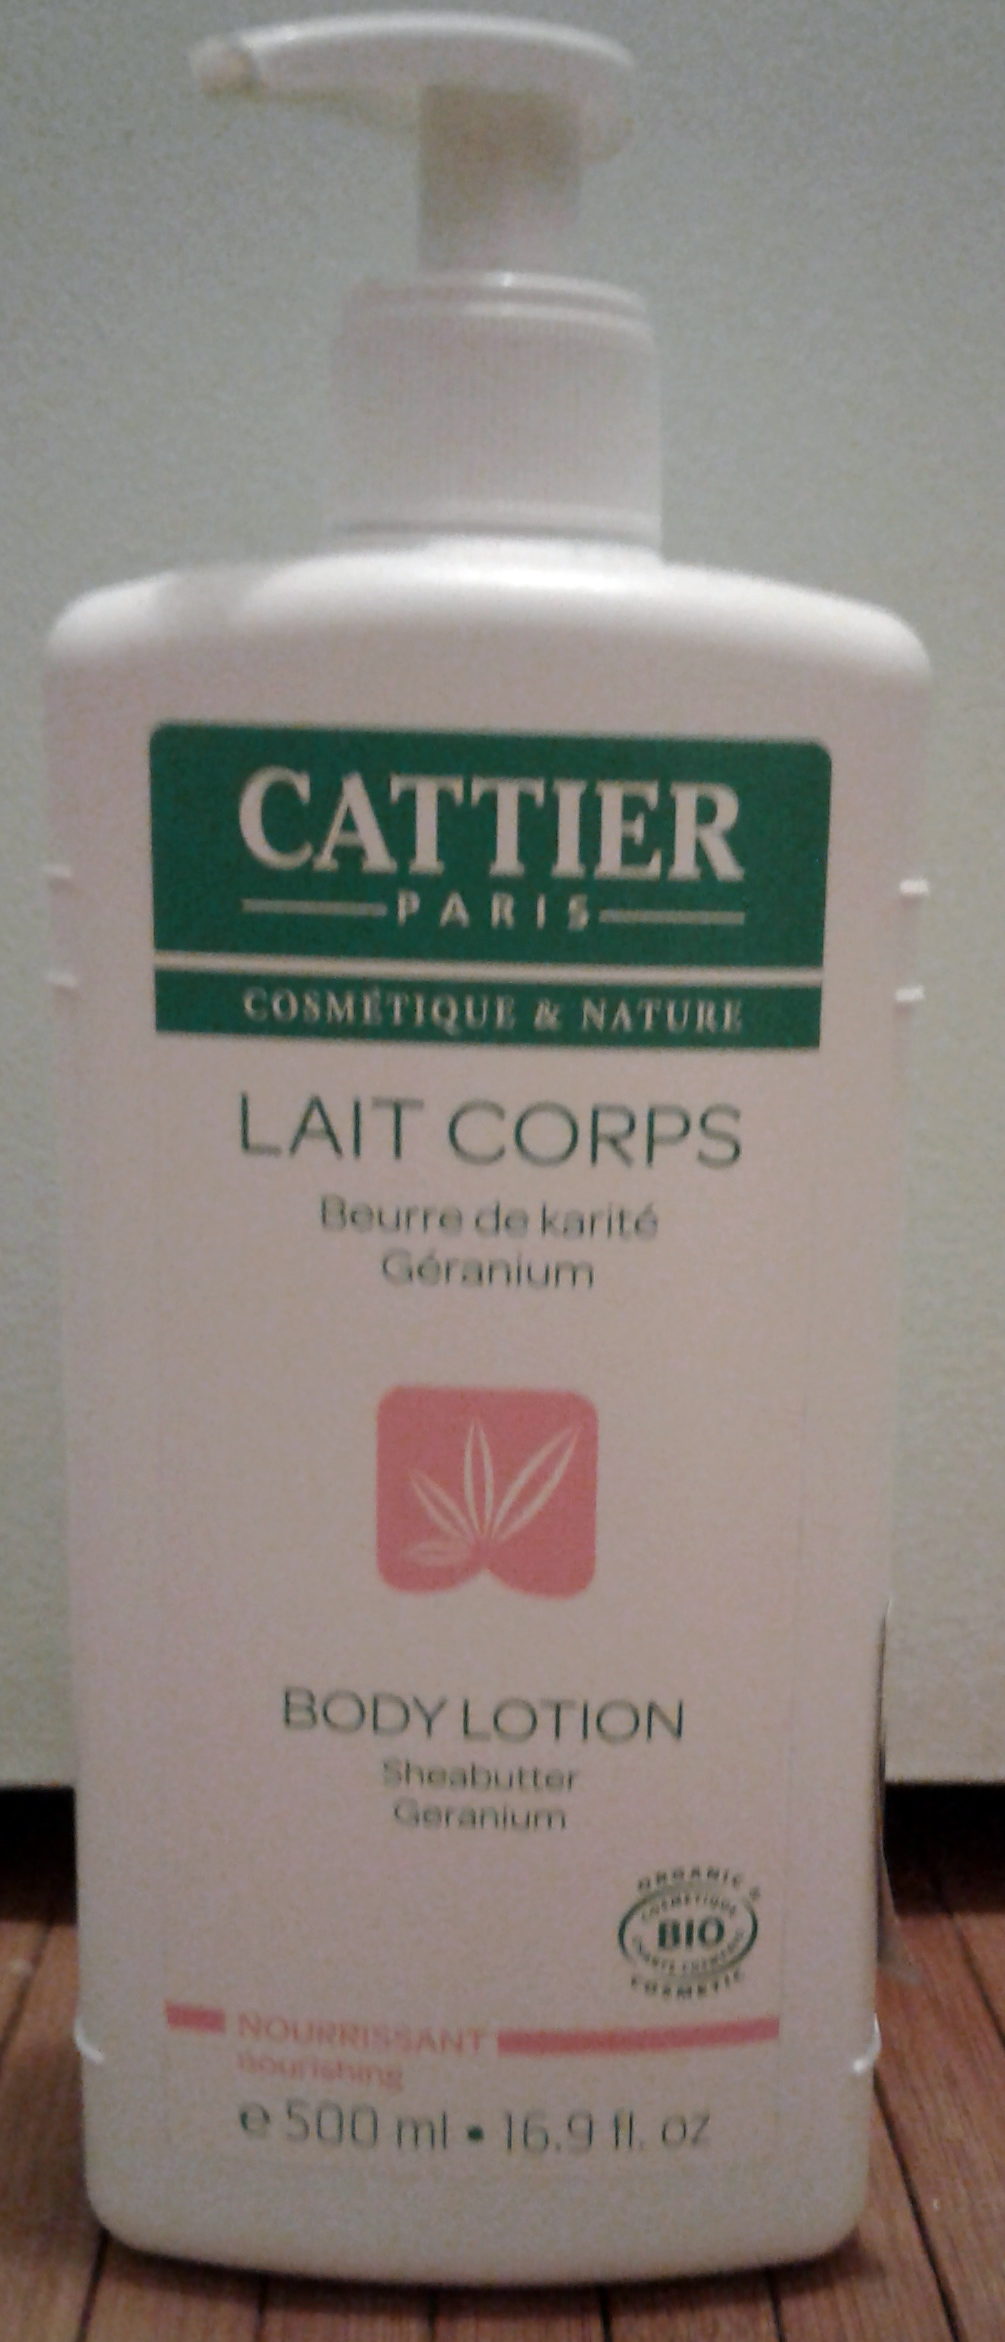 Lait corps beurre de karité géranium - Product - fr